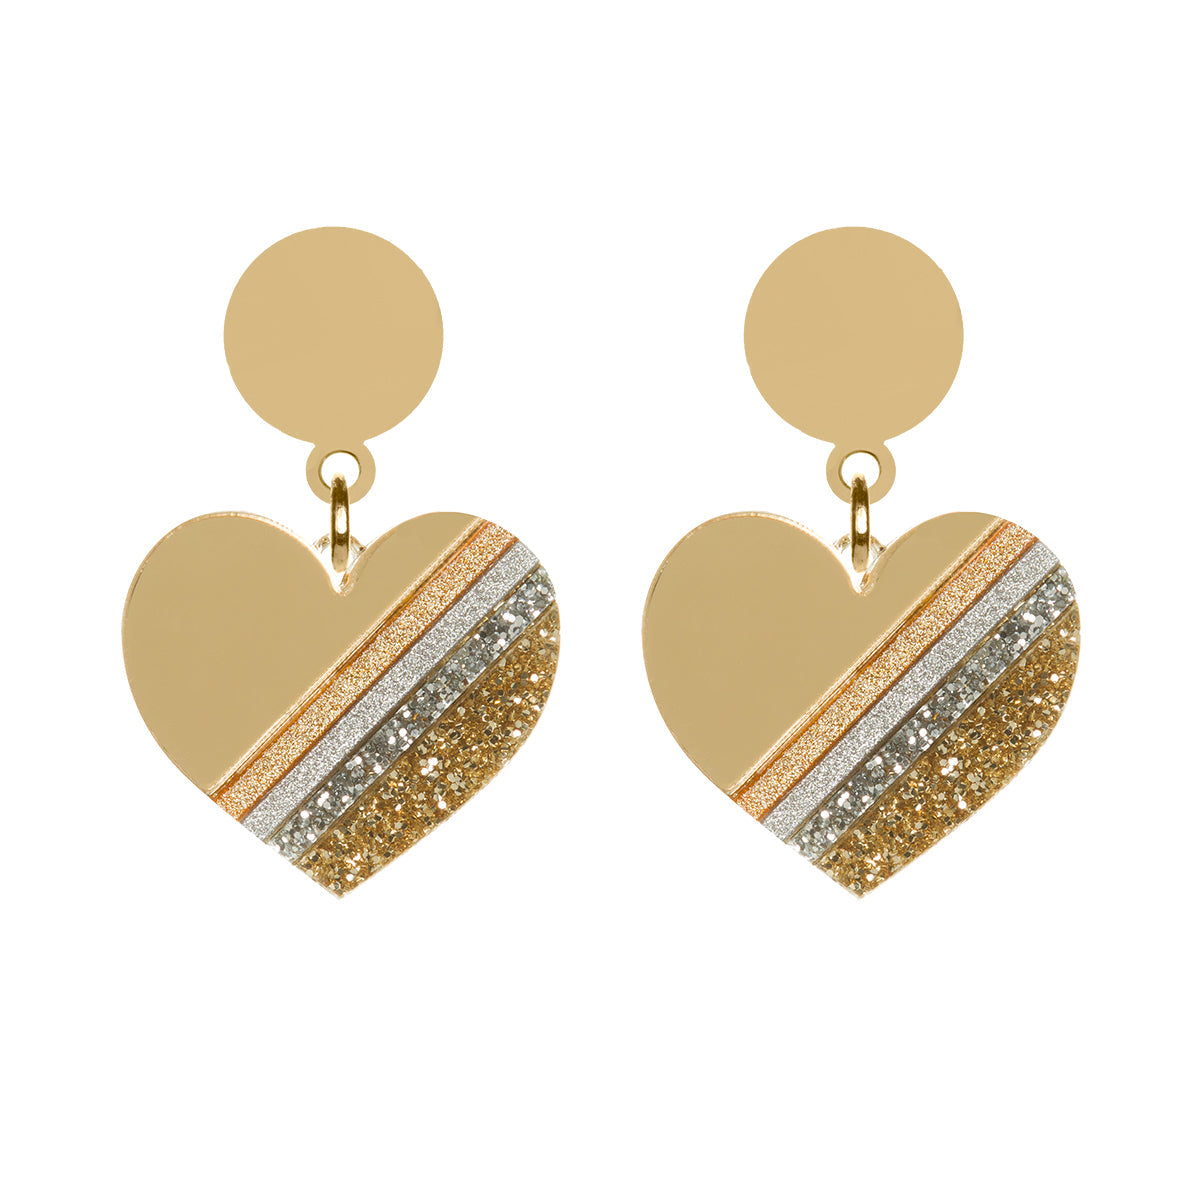 Gold Heart of Glass Earrings Dollydagger Rollerama